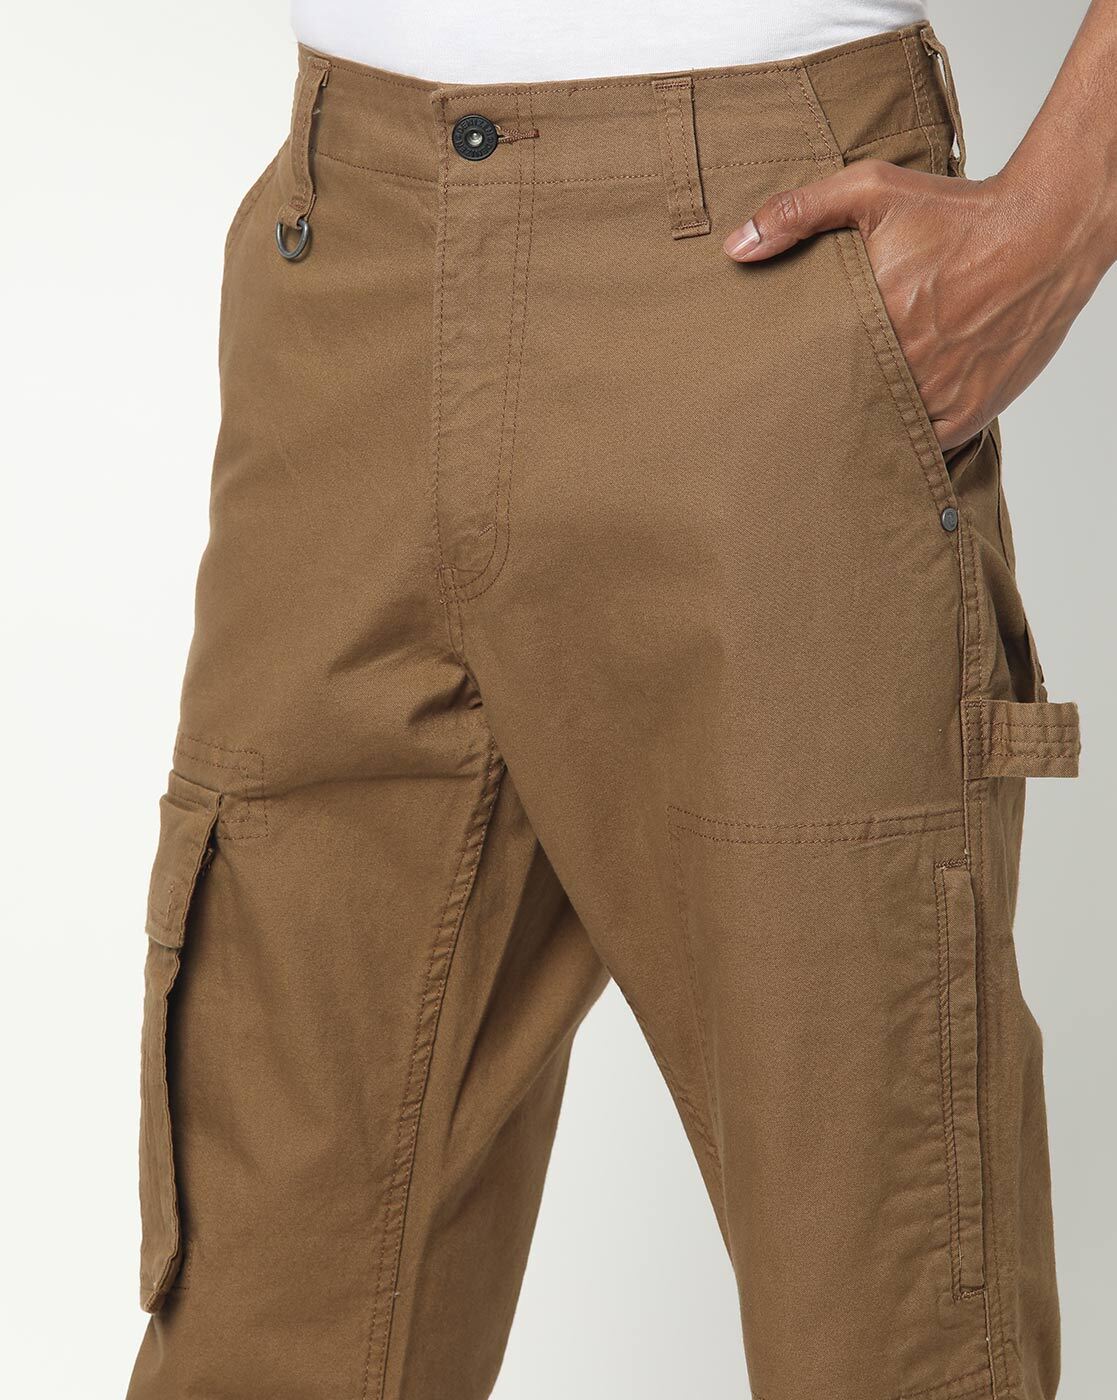 Buy Green Trousers  Pants for Men by DENIZEN FROM LEVIS Online  Ajiocom